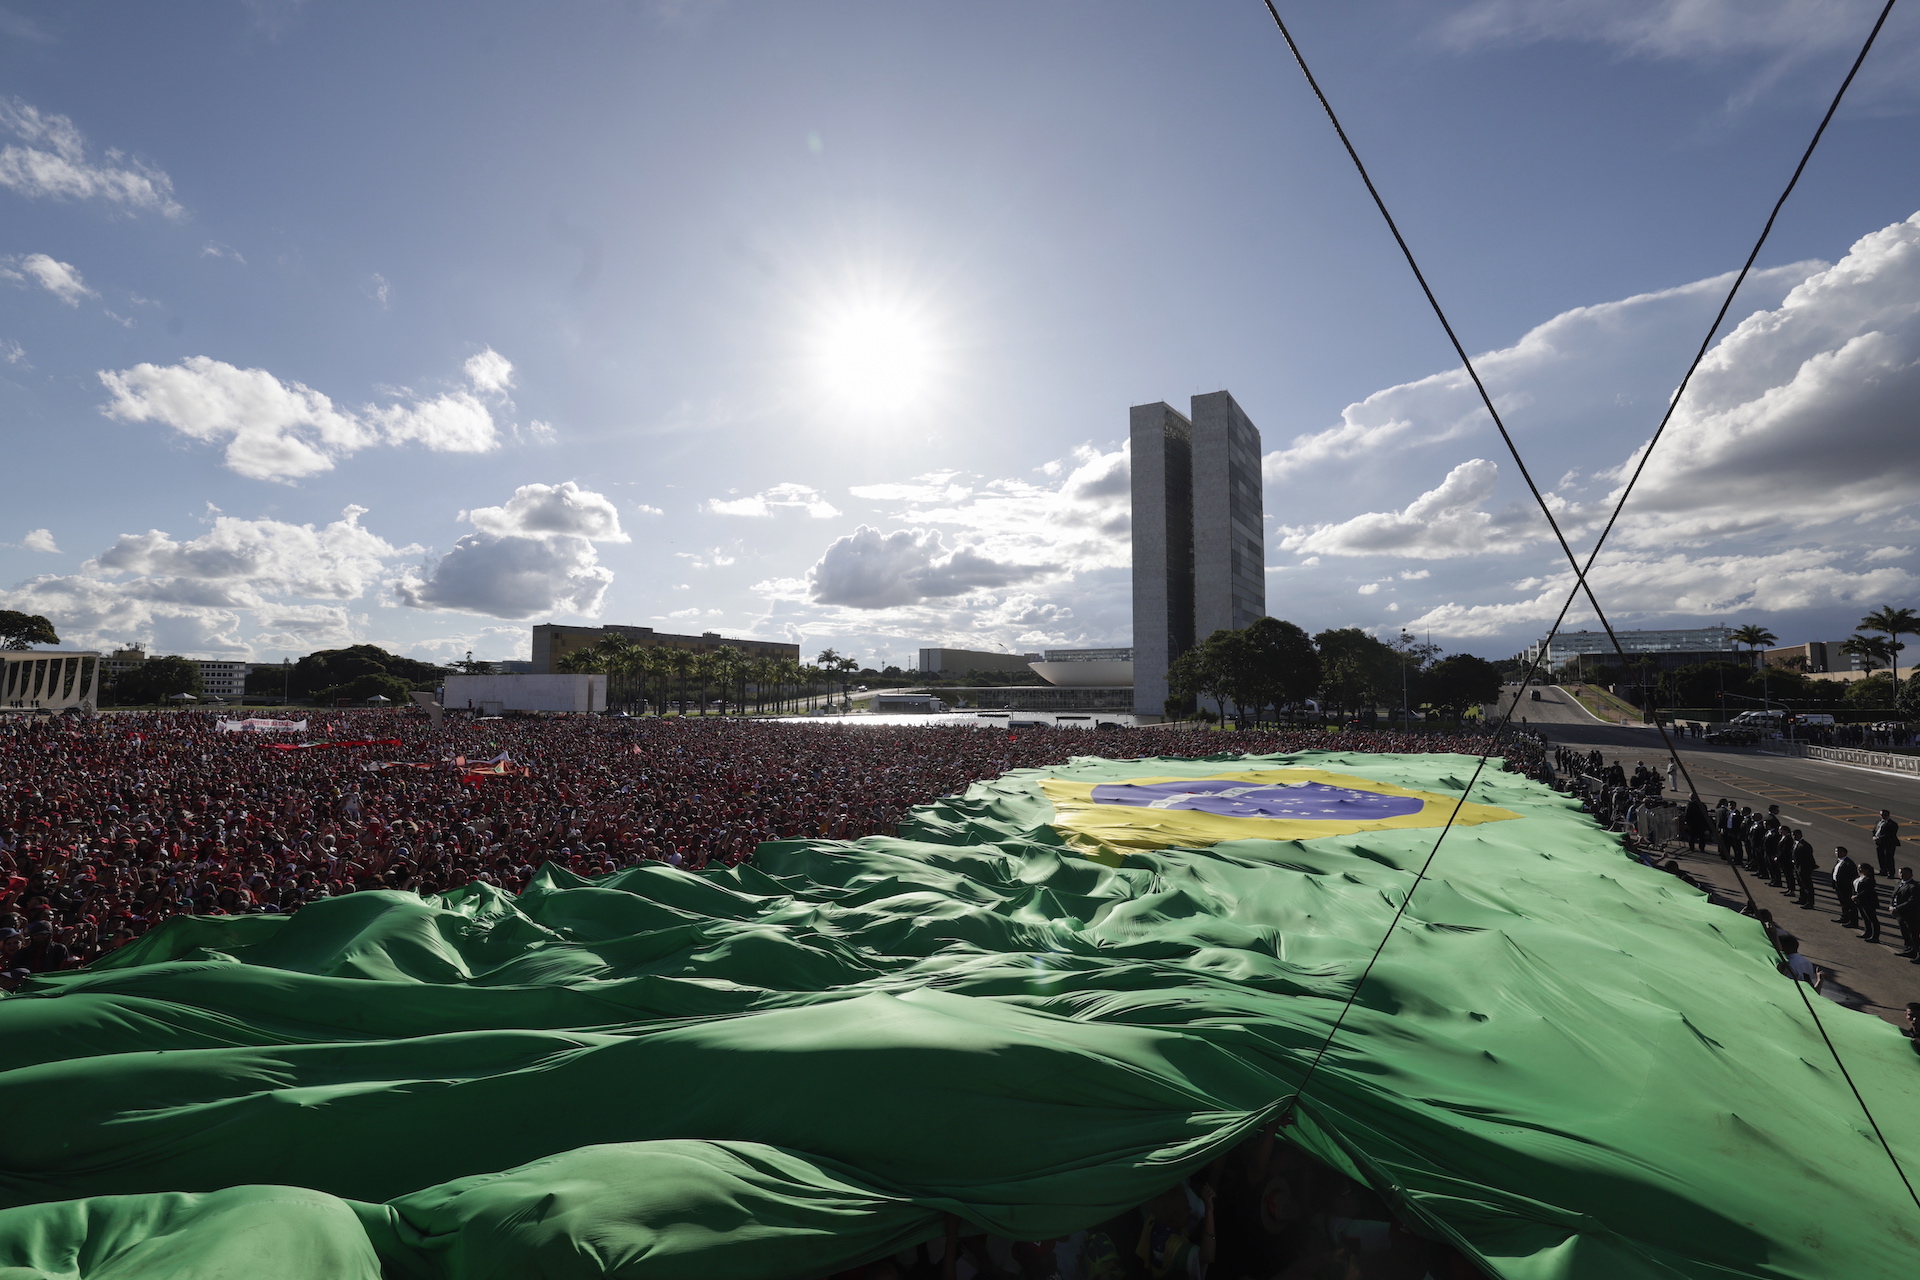 Lula e Papa Francisco: paz, combate à pobreza e proteção da